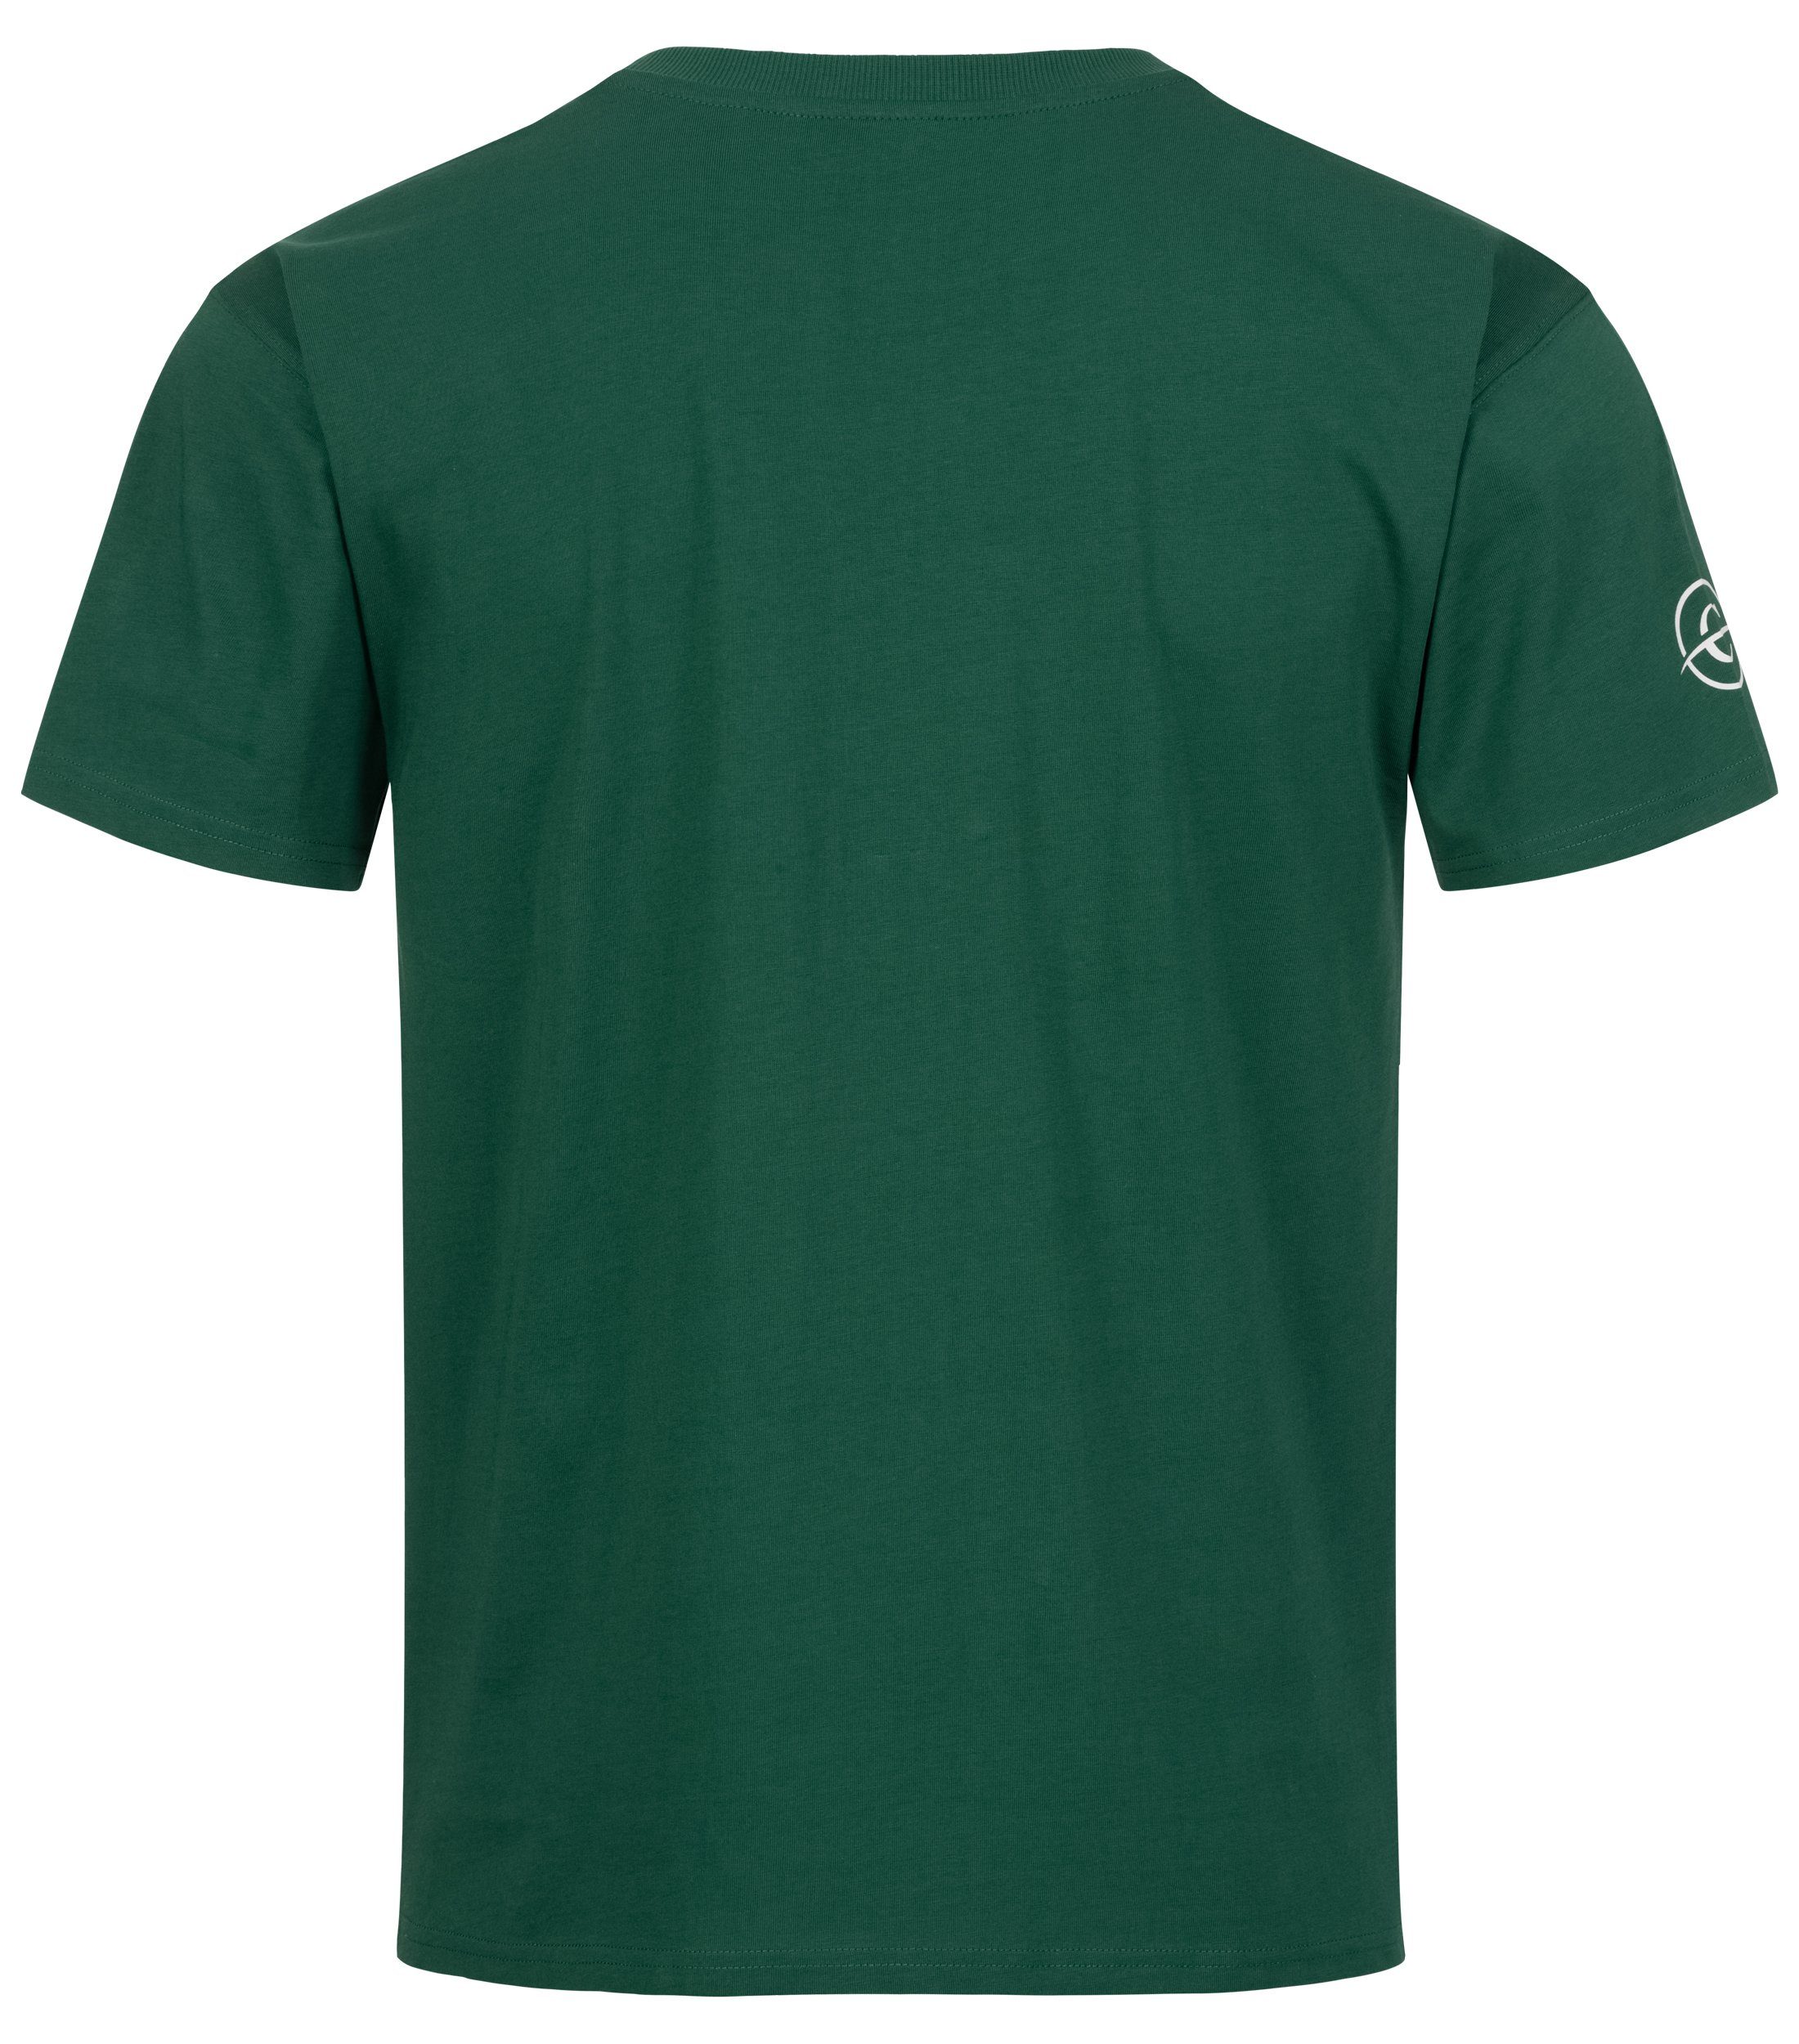 Baumwolle Brusttasche Chilled Grün Mercury Rundhals T-Shirt Freizeit mit Shirt/